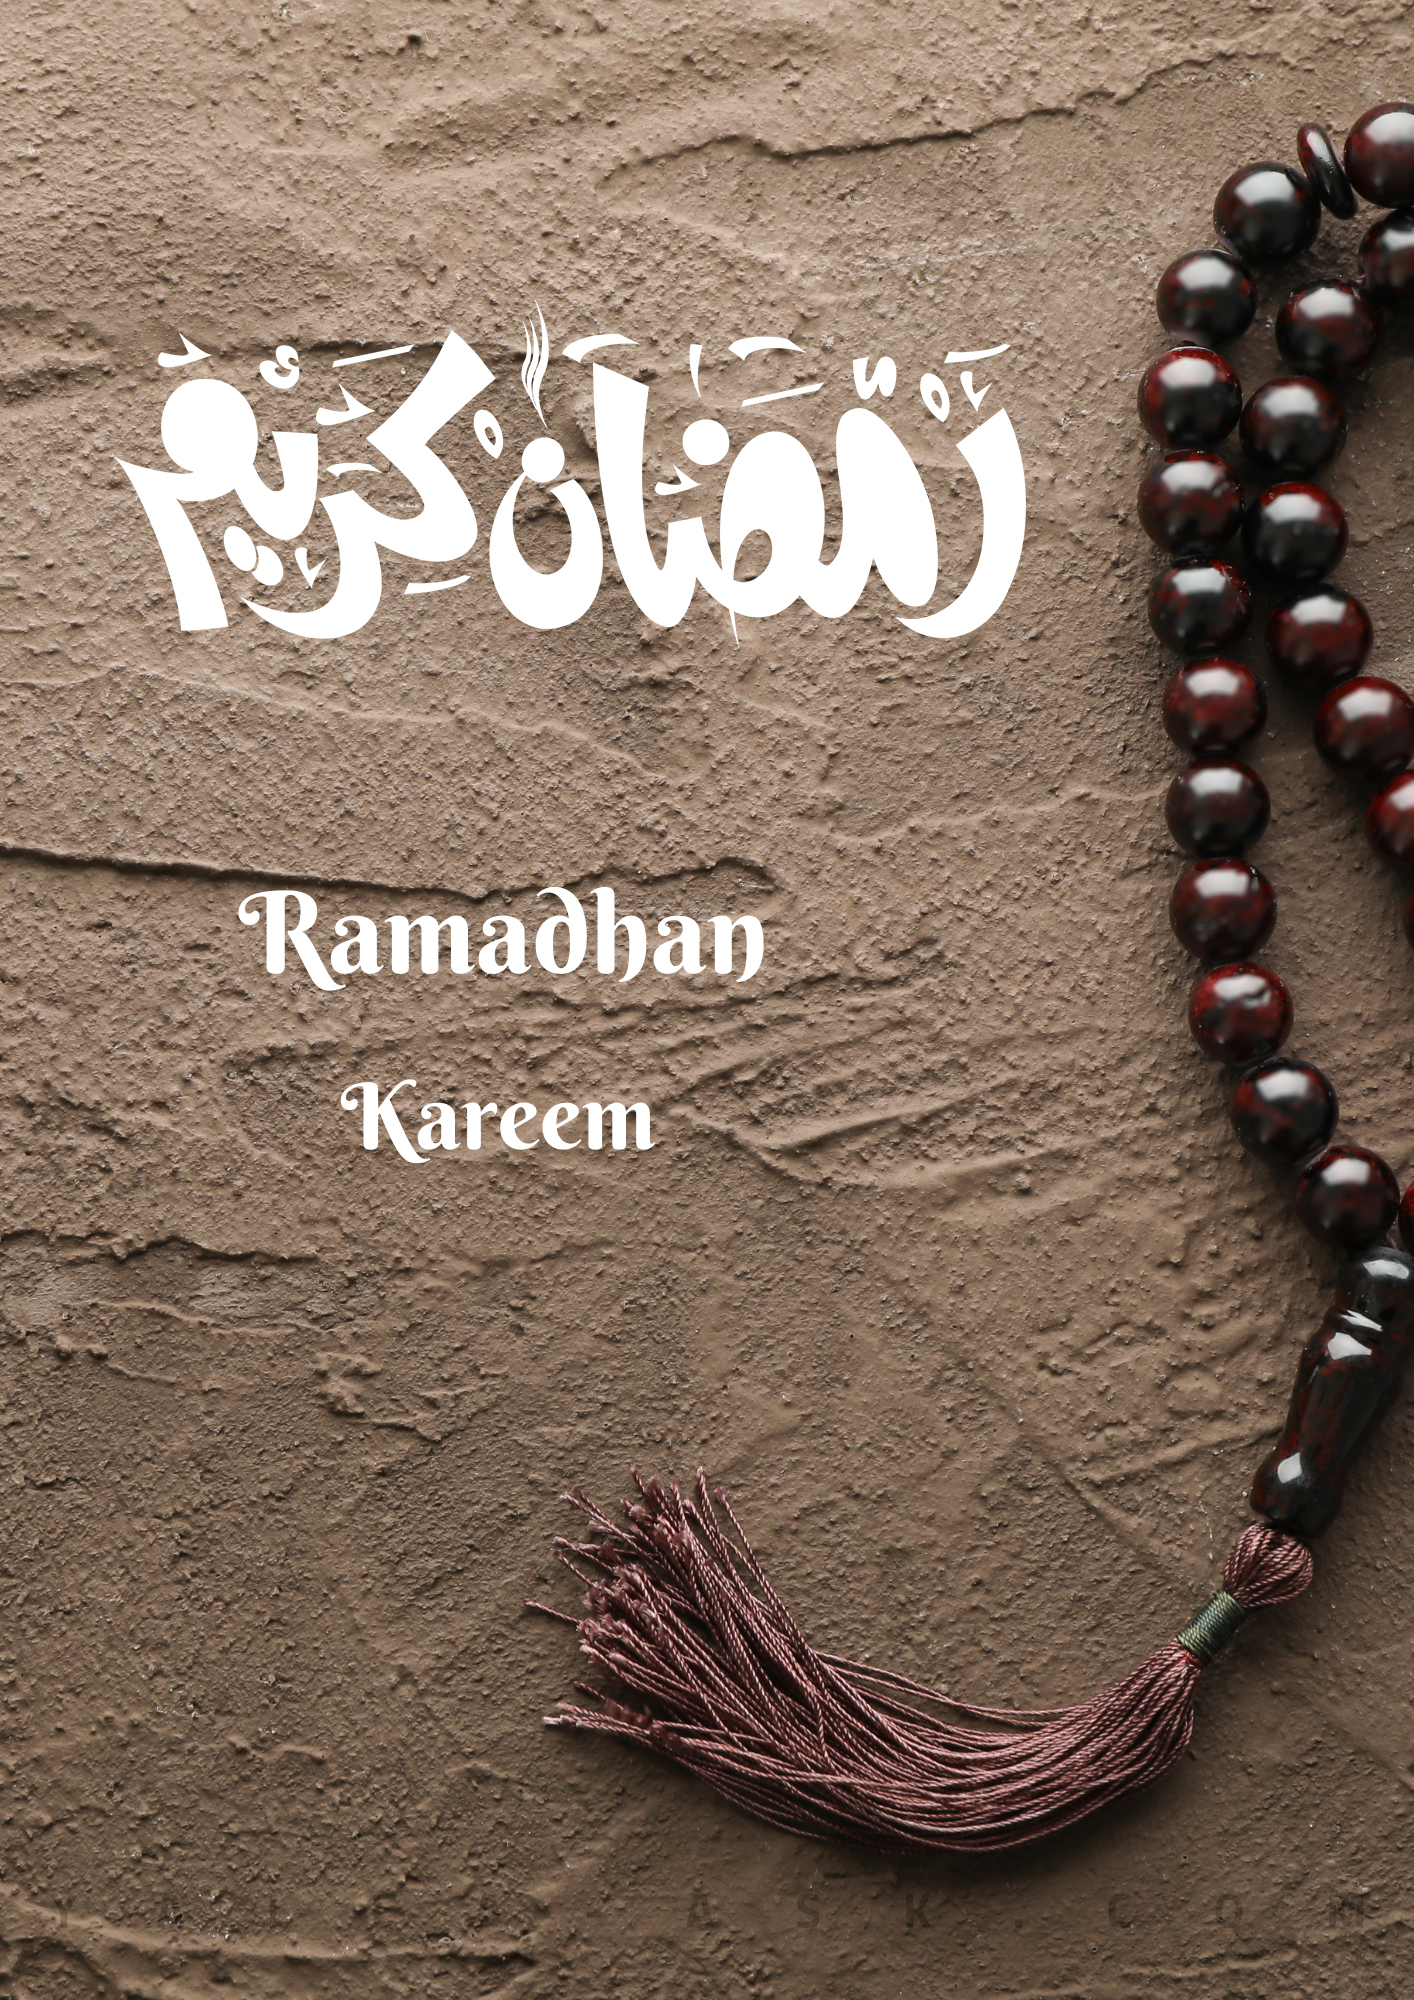 صور تهنئة و خلفيات شهر رمضان